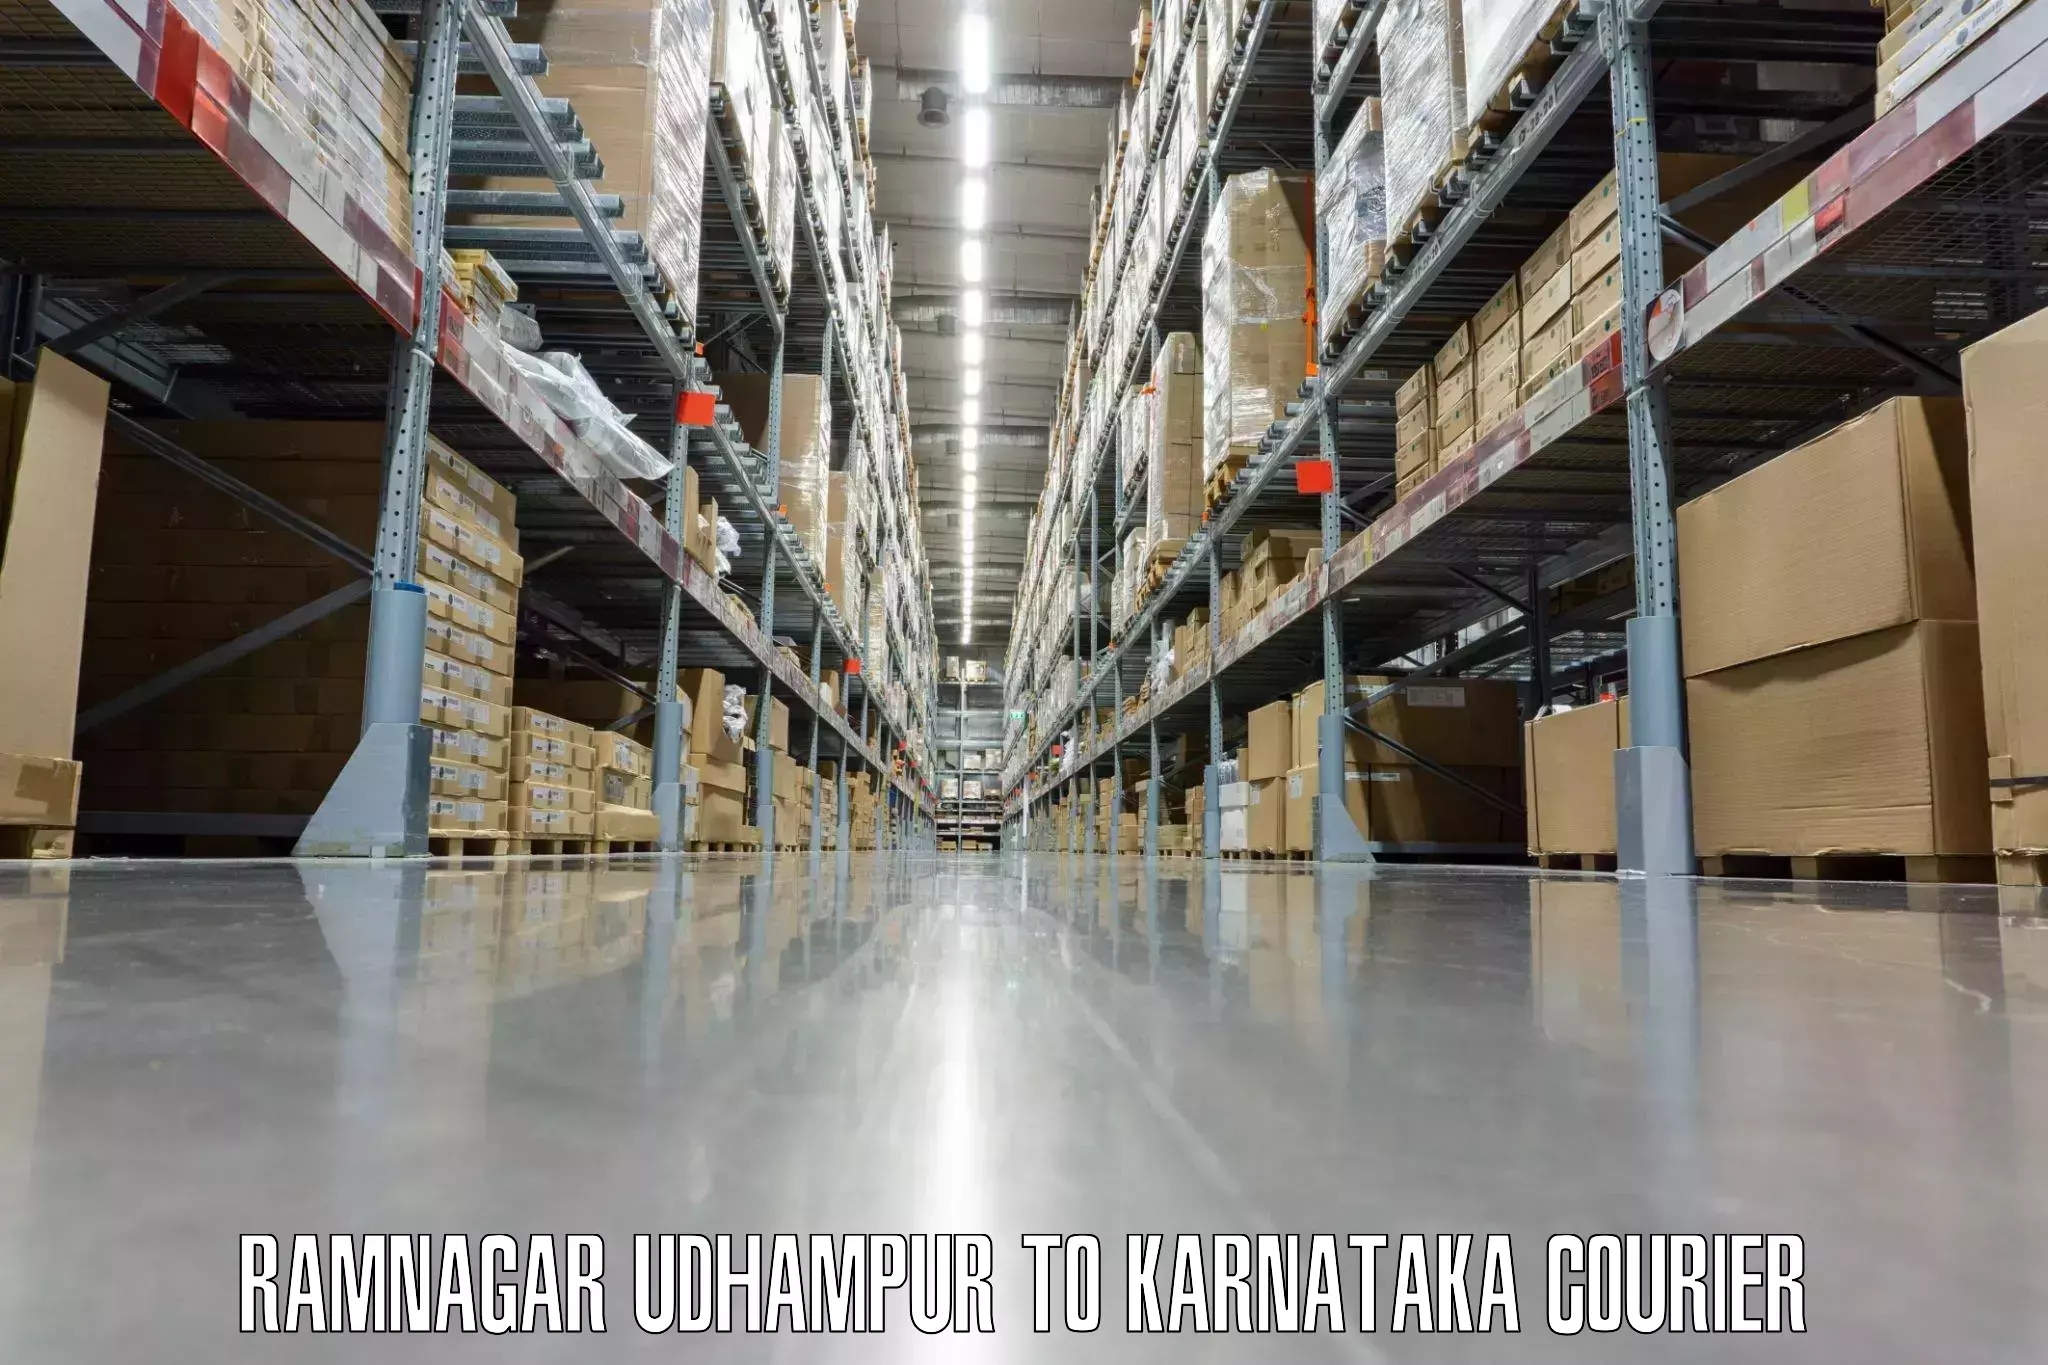 Luggage transport consulting Ramnagar Udhampur to Karnataka